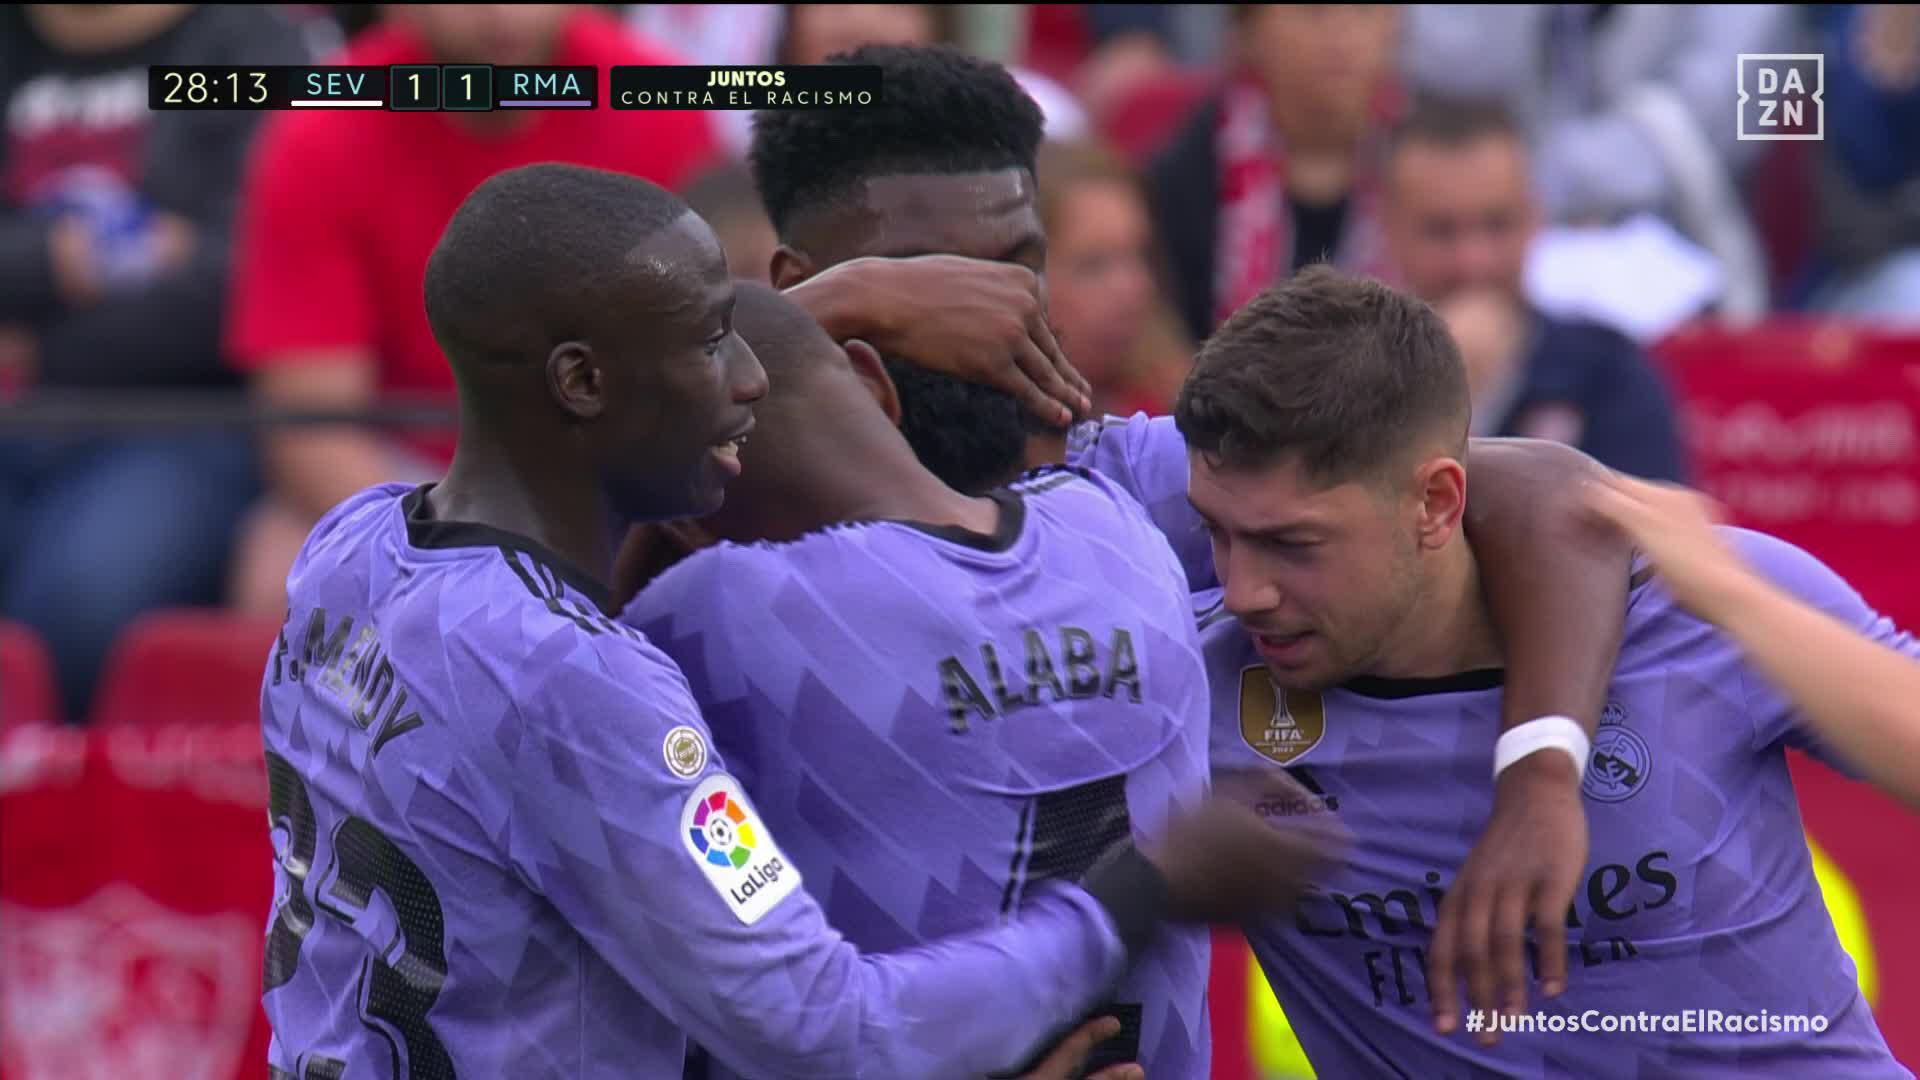 Páralo... ¡SI PUEDES! 😳😳😳

@RodrygoGoes convierte su octavo gol en LaLiga y pone el empate en Sevilla ✨ 

#LaLigaEnDAZN ⚽”